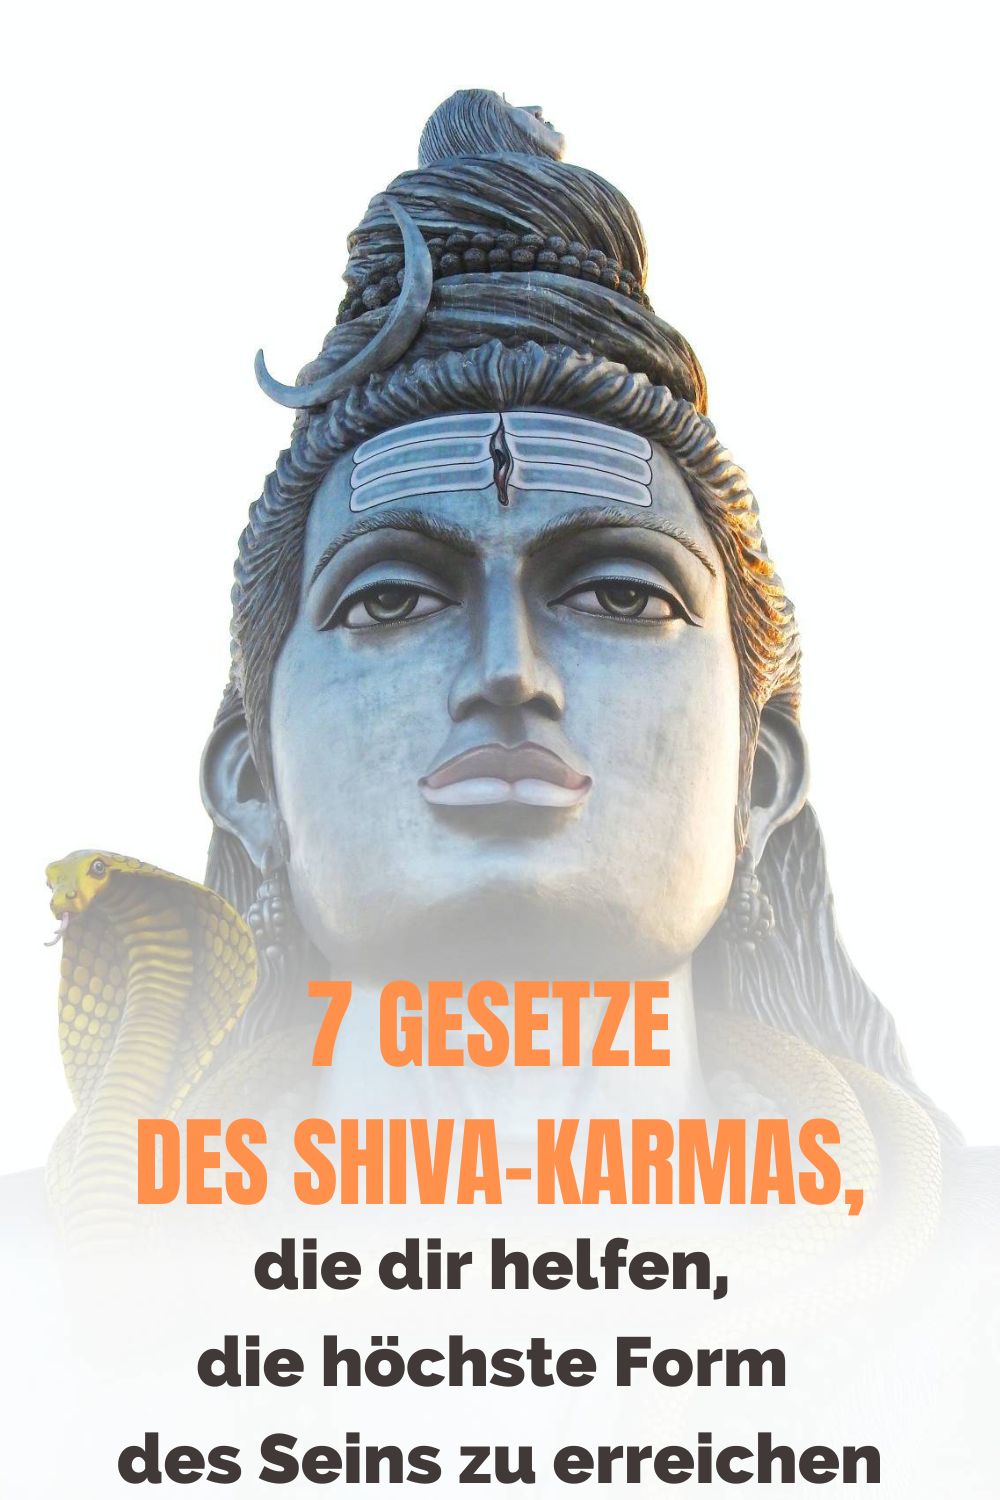 7-Gesetze-des-Shiva-Karmas-die-dir-helfen-die-hoechste-Form-des-Seins-zu-erreichen-1